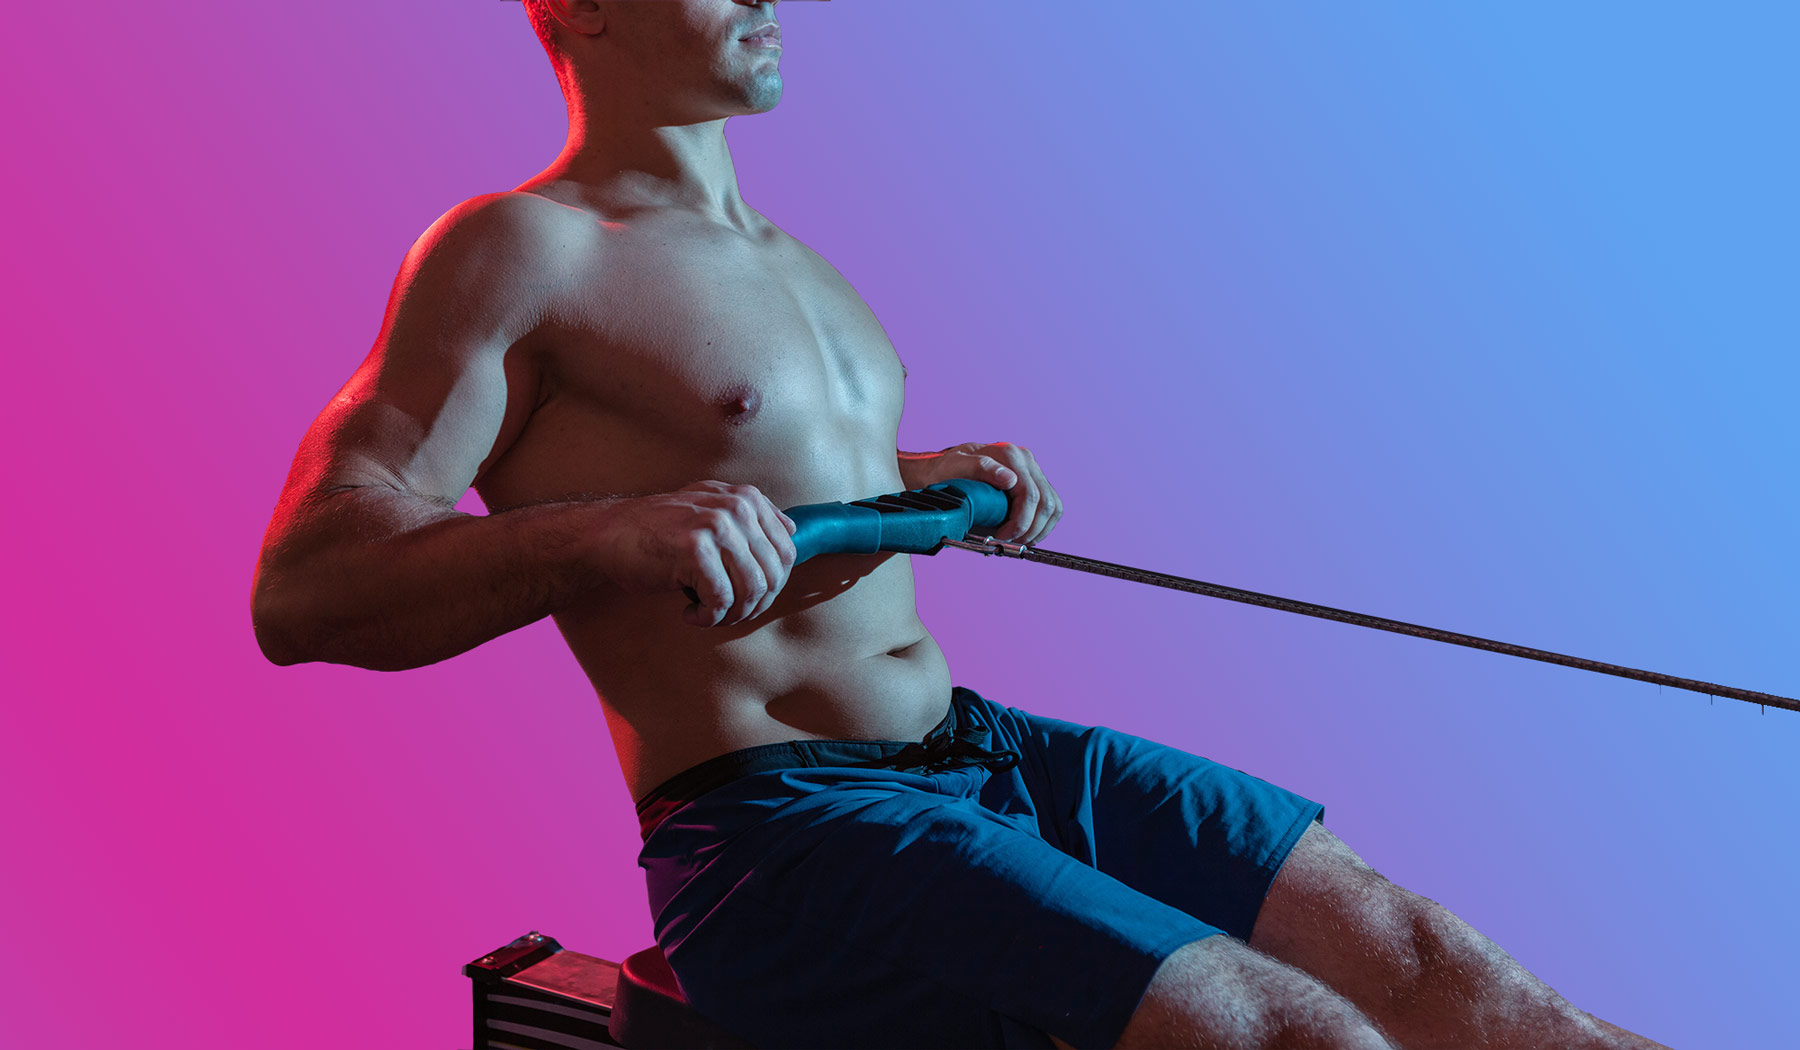 Как убрать жир внизу живота — советы мужчинам-спортсменам